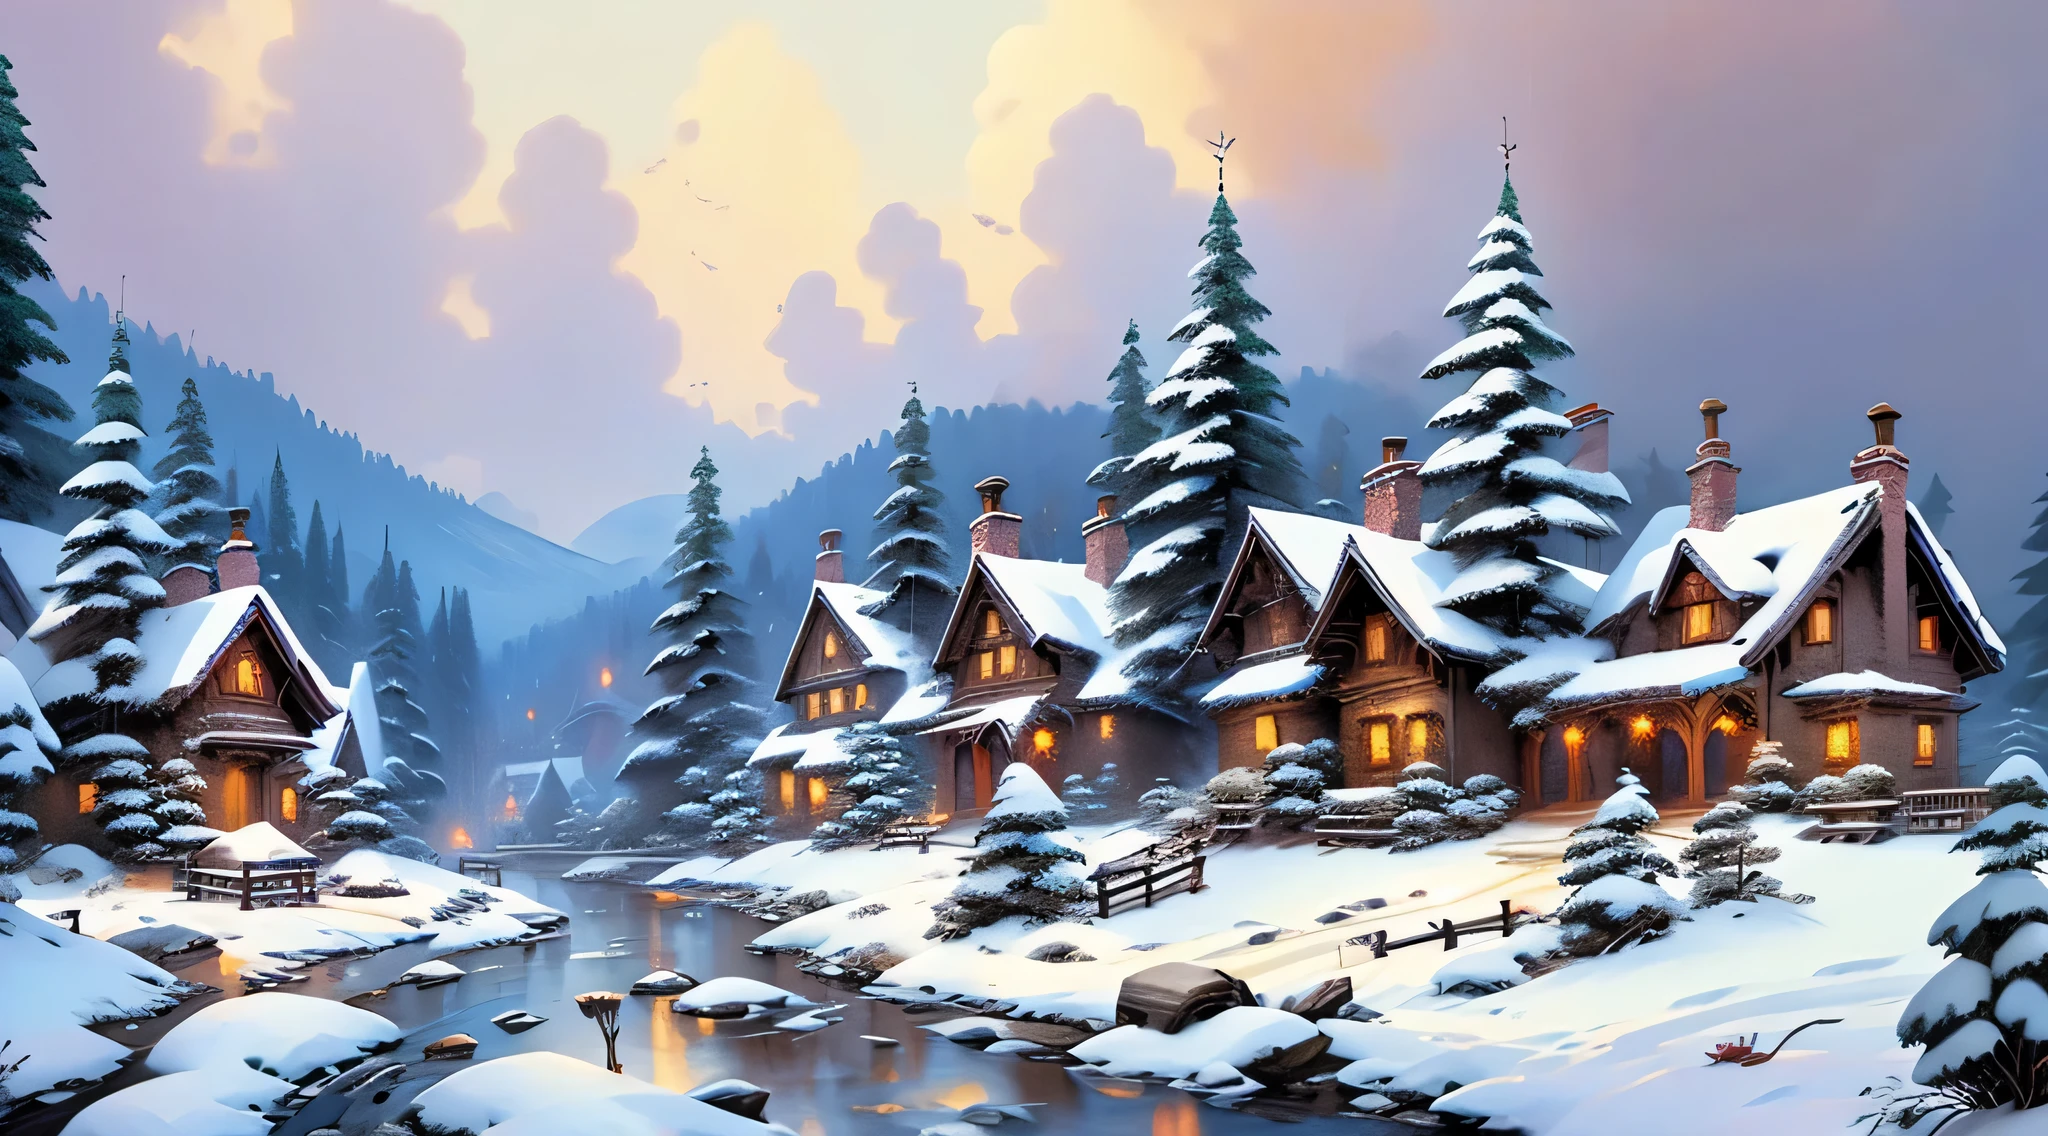 หมู่บ้านที่เต็มไปด้วยหิมะ, บ้านที่ปกคลุมไปด้วยหิมะ, หิมะปกคลุมต้นไม้, คุณภาพสูง, พรรณนาอย่างละเอียด, การแสดงออกอย่างละเอียด